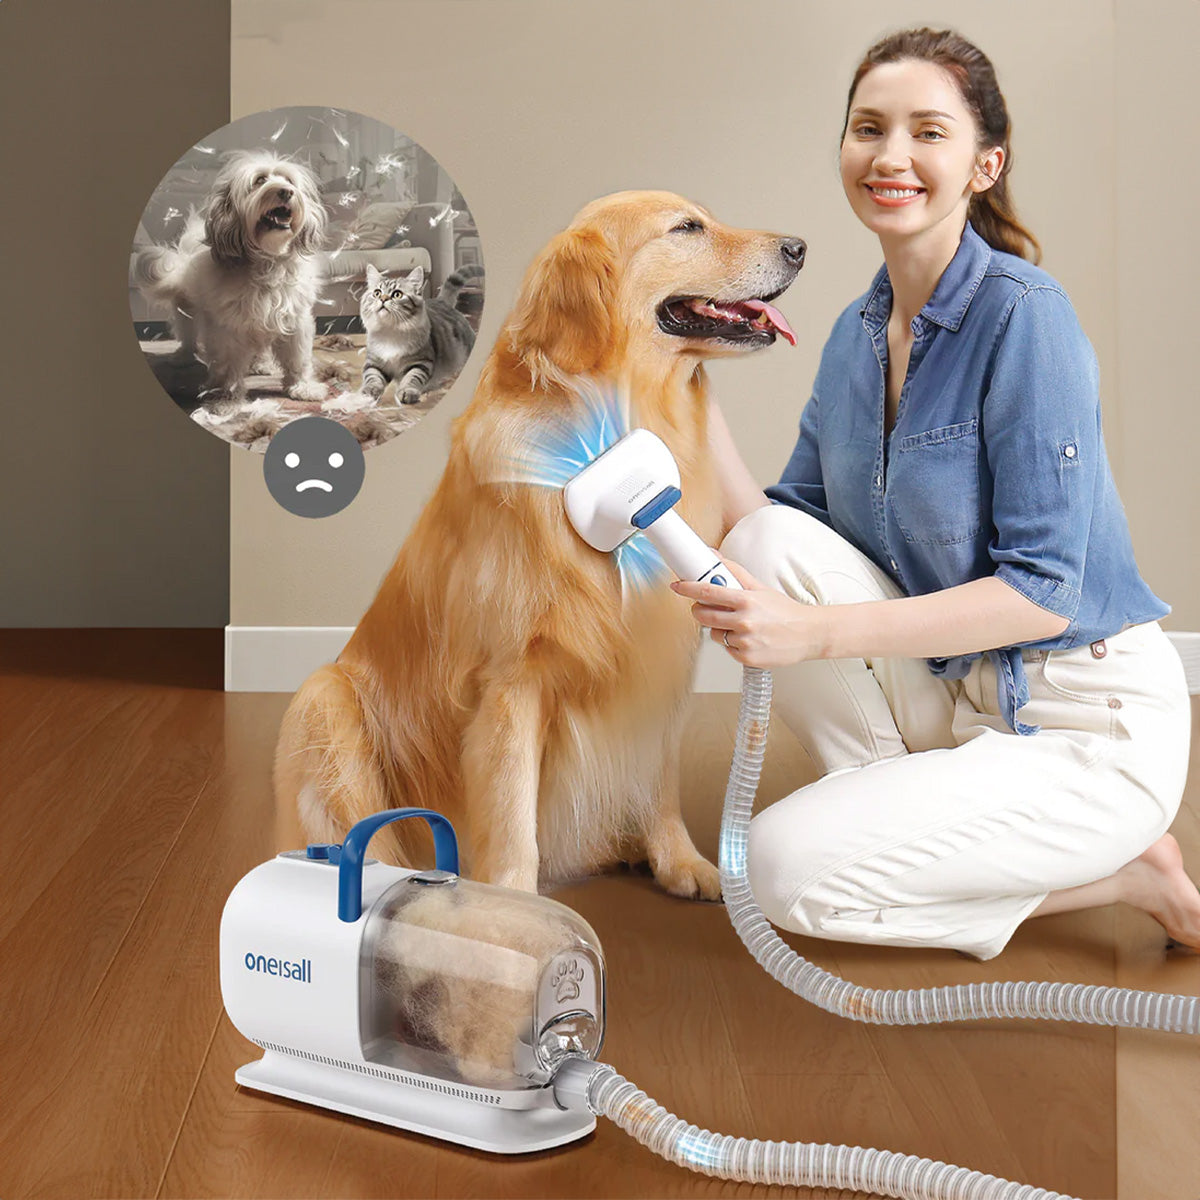 Oneisall KYLE Pet Grooming Vacuum Cleaner